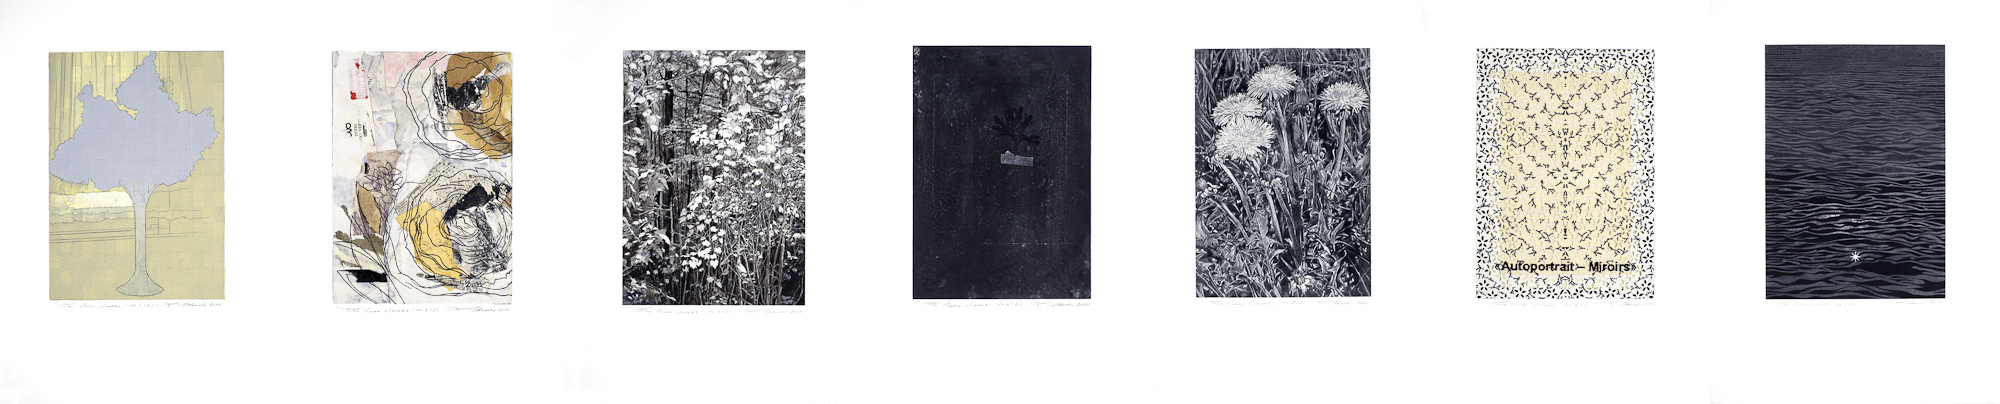 Les clairs-obscurs (série D), 2010 - 2012. Techniques mixtes sur papier fort, 42,5 x 210 cm.